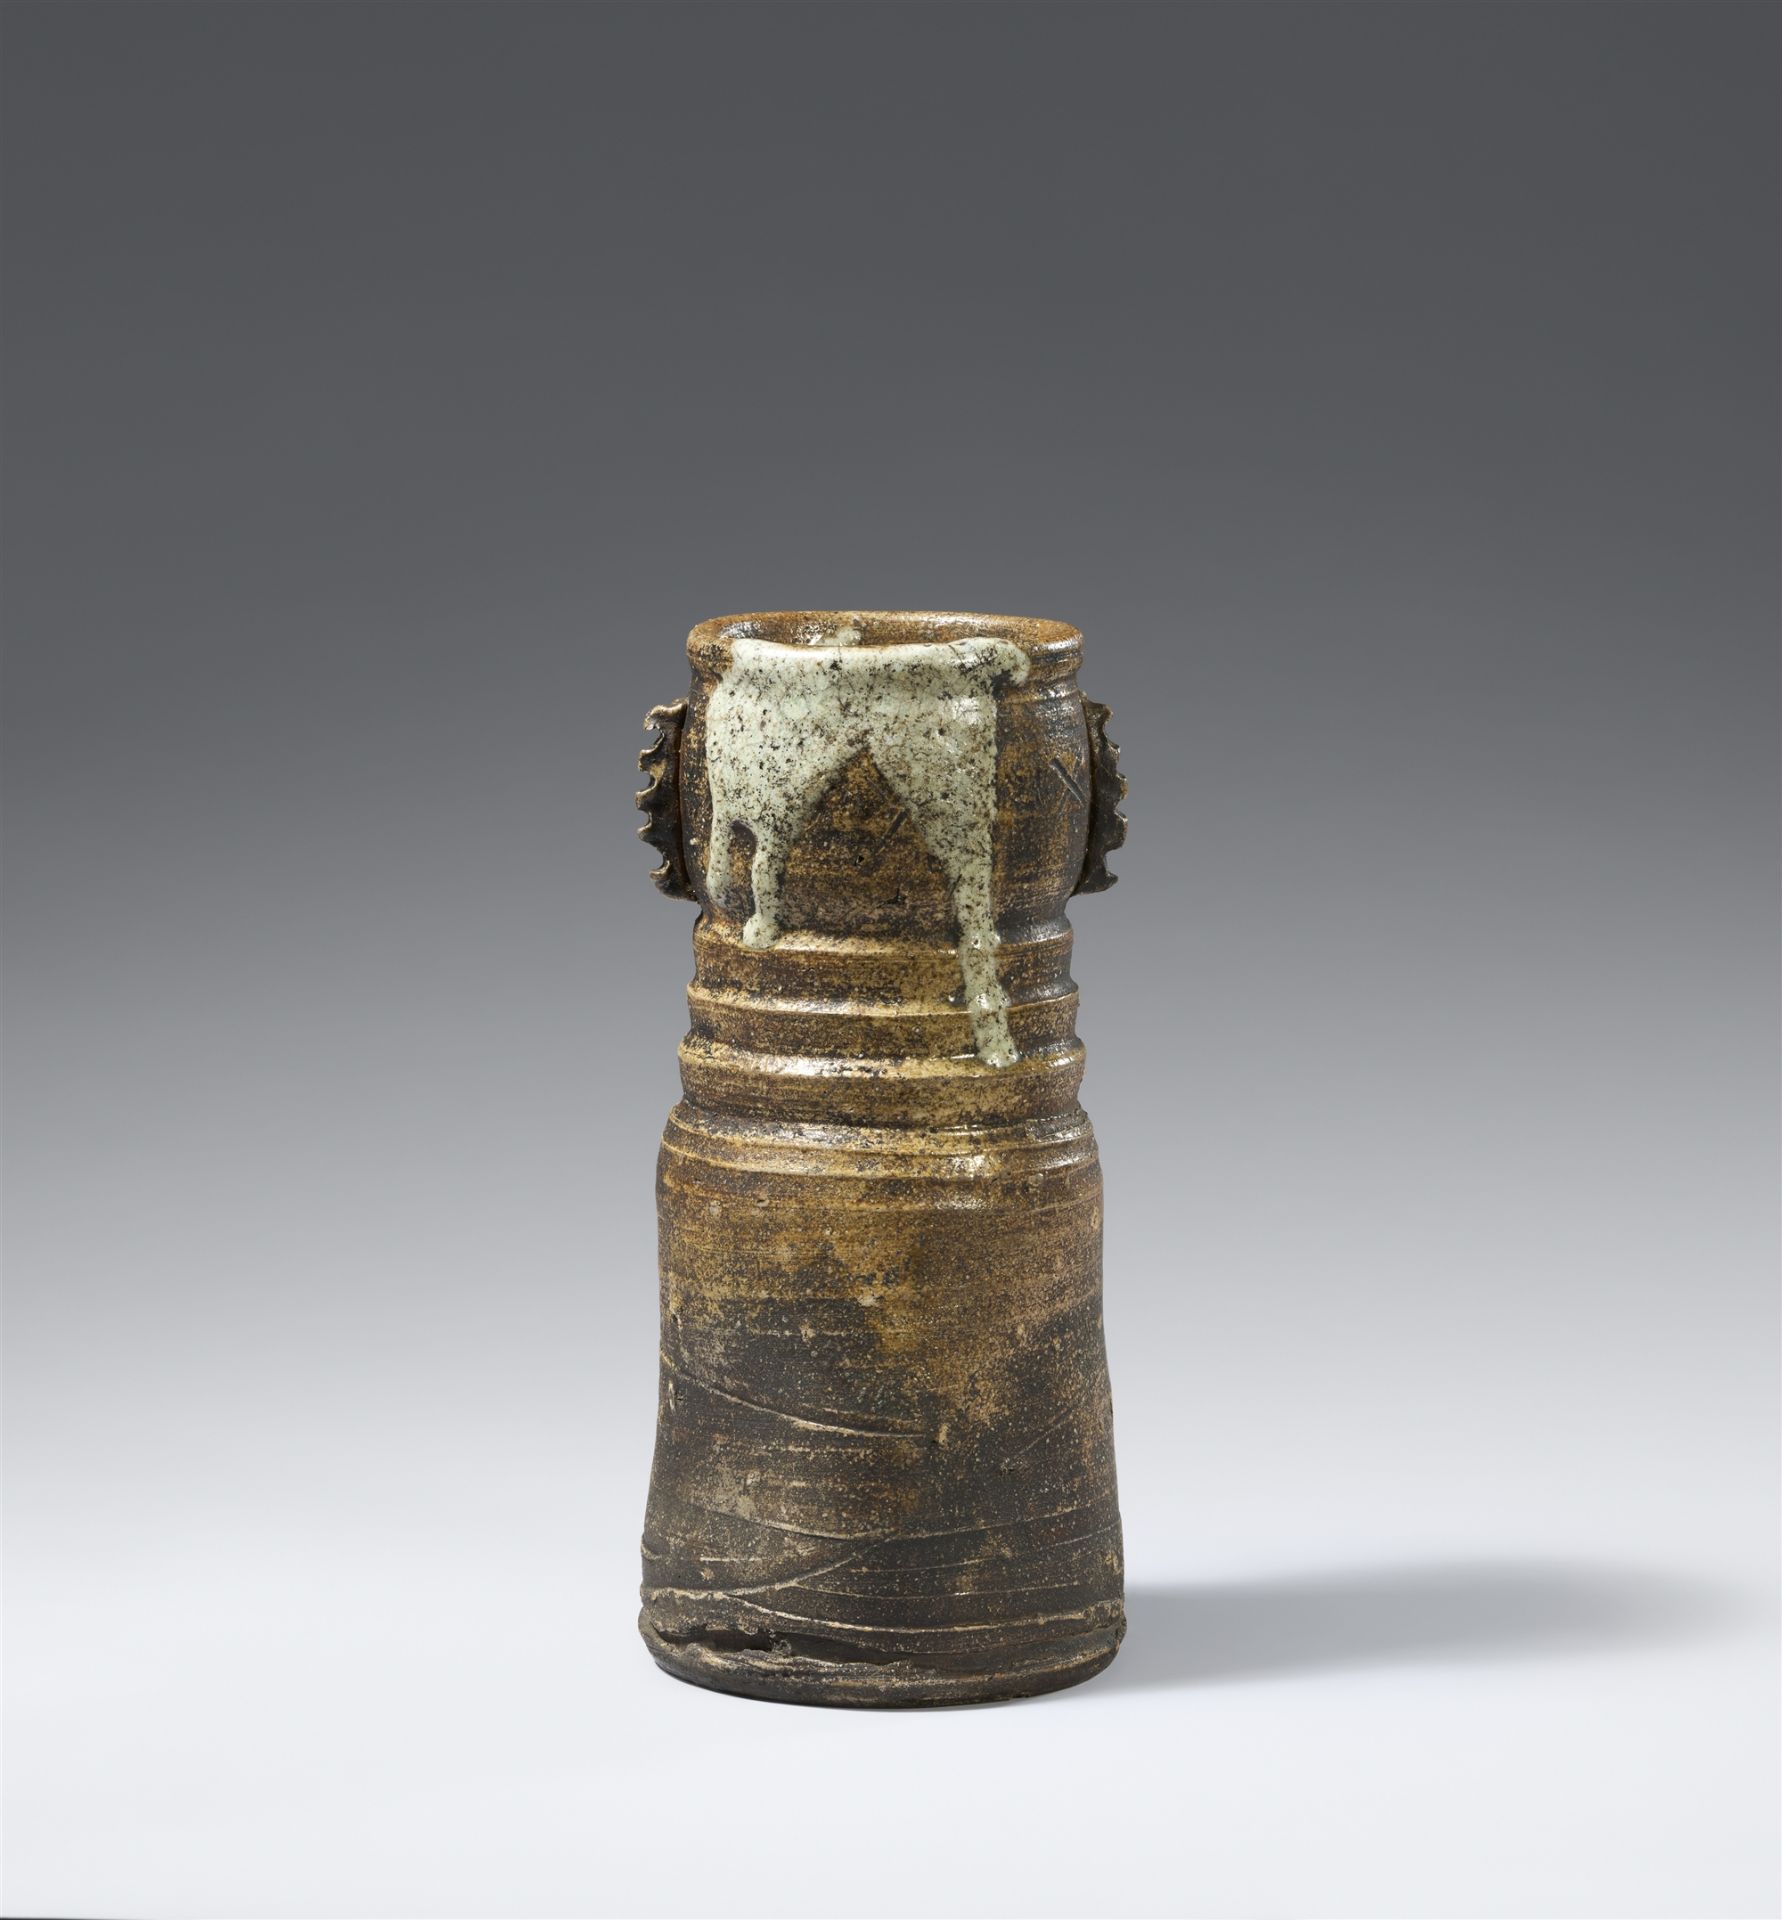 A large Iga flower vase (hanaire). Momoyama/early Edo period, 17th century